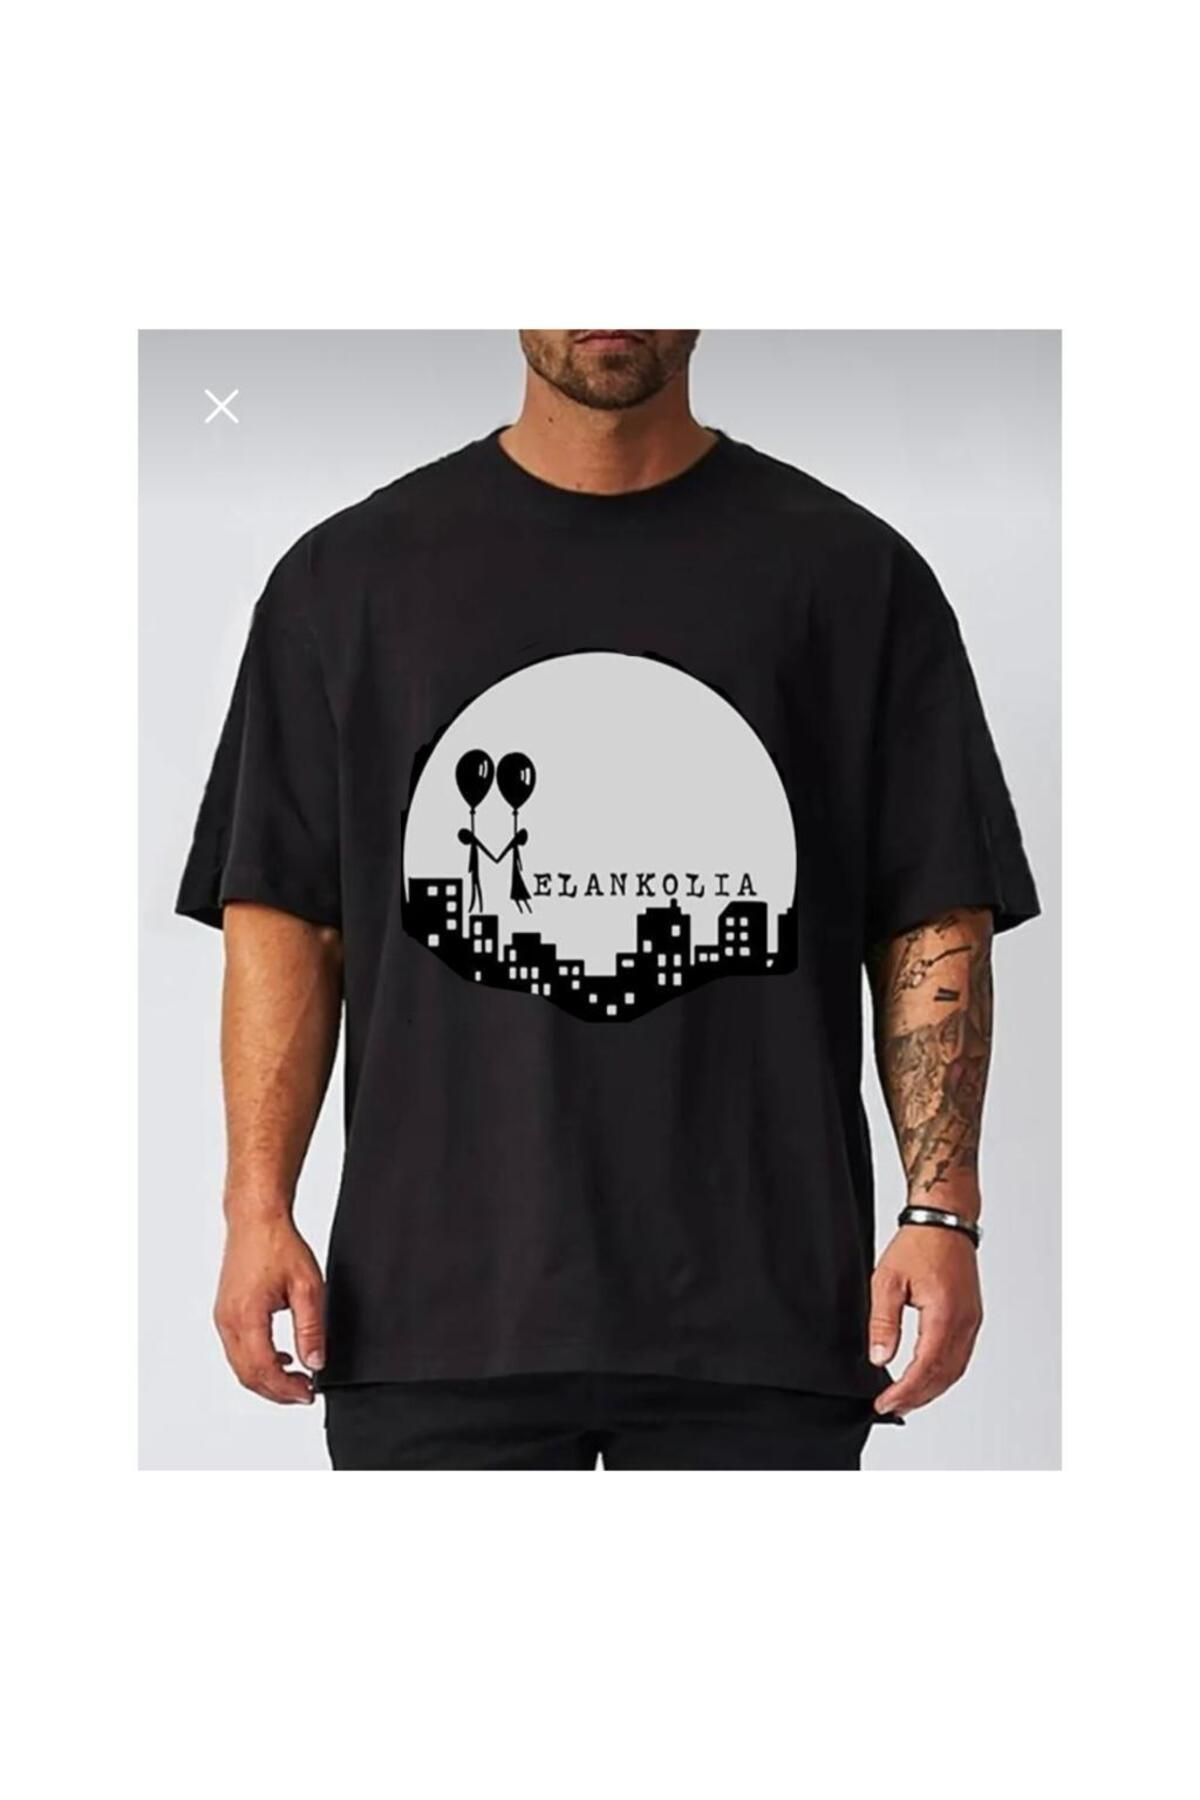 baskwear Sagopa Kajmer Melankolia Rap Rapstar Tişört Unisex T-shirt